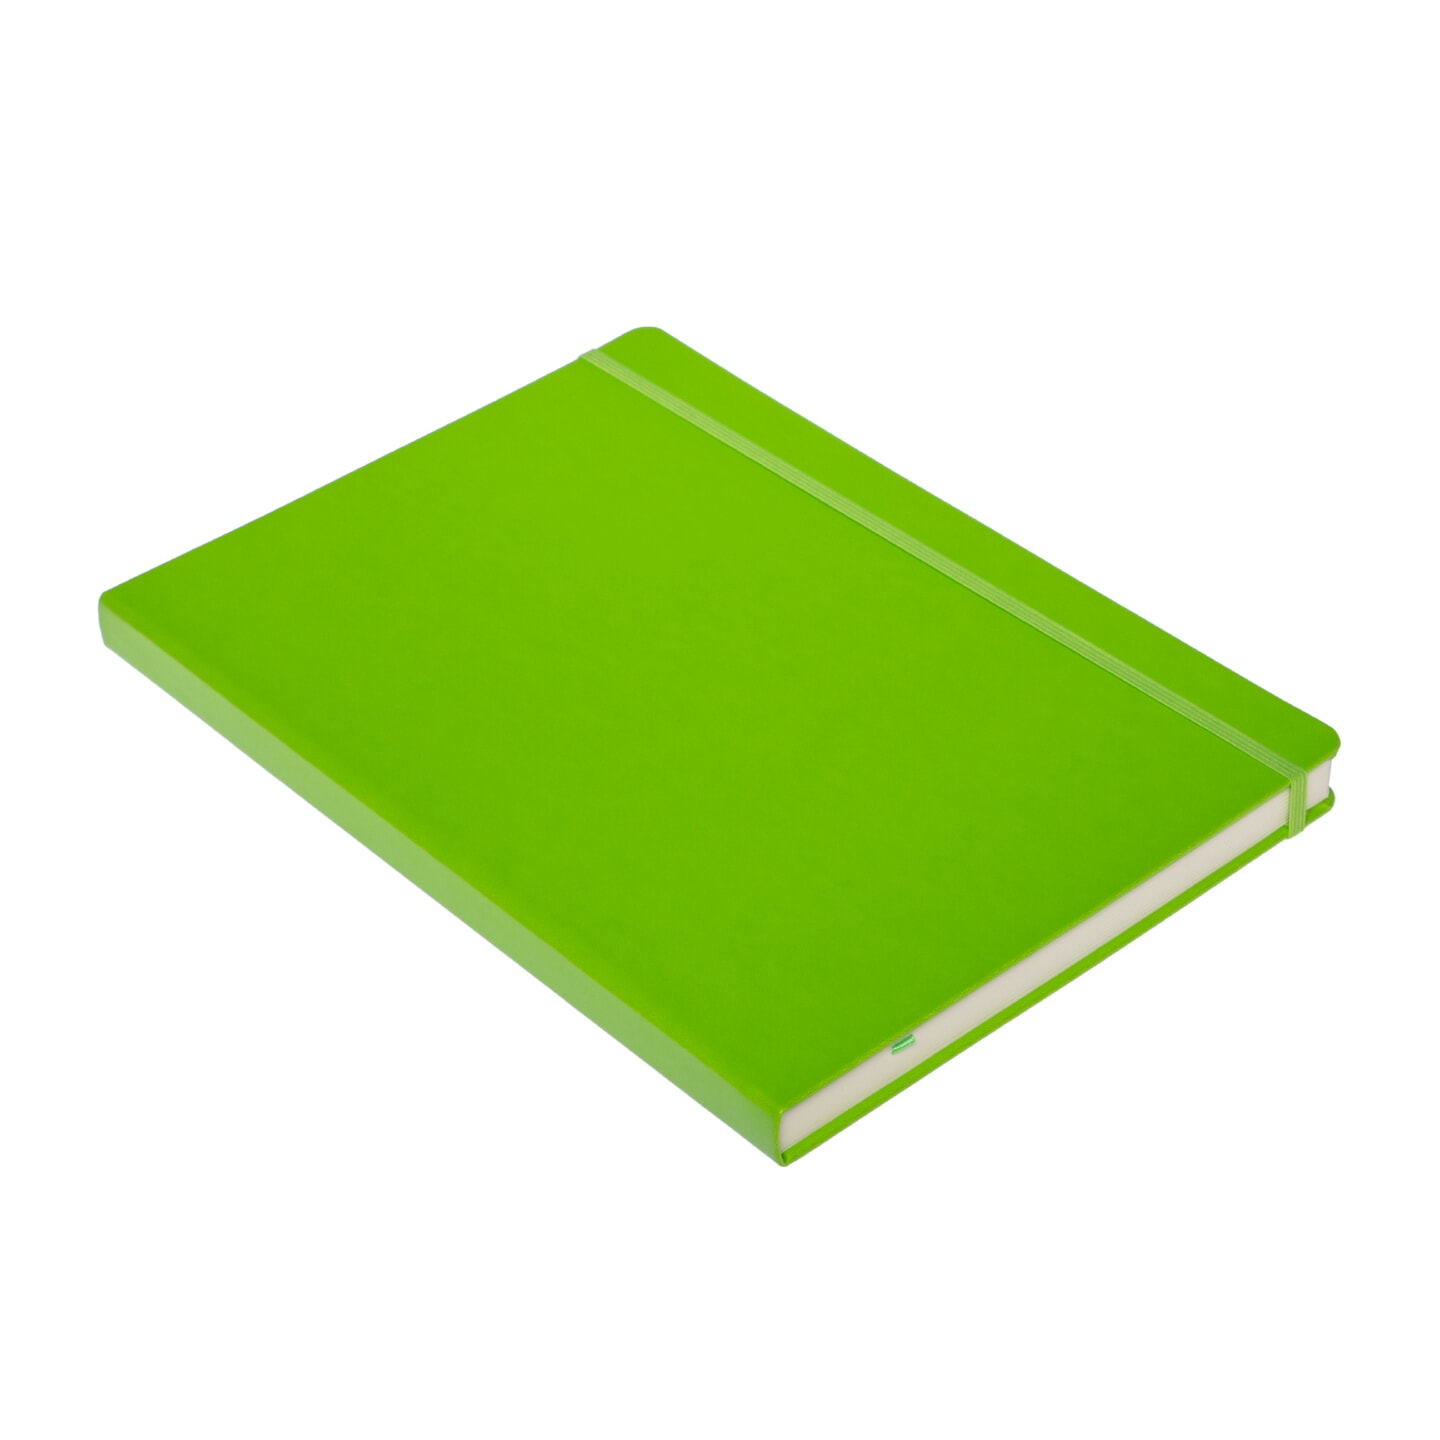 Блокнот для зарисовок Sketchmarker 140г/кв.м 21*29.7см 80л твердая обложка Зеленый луг